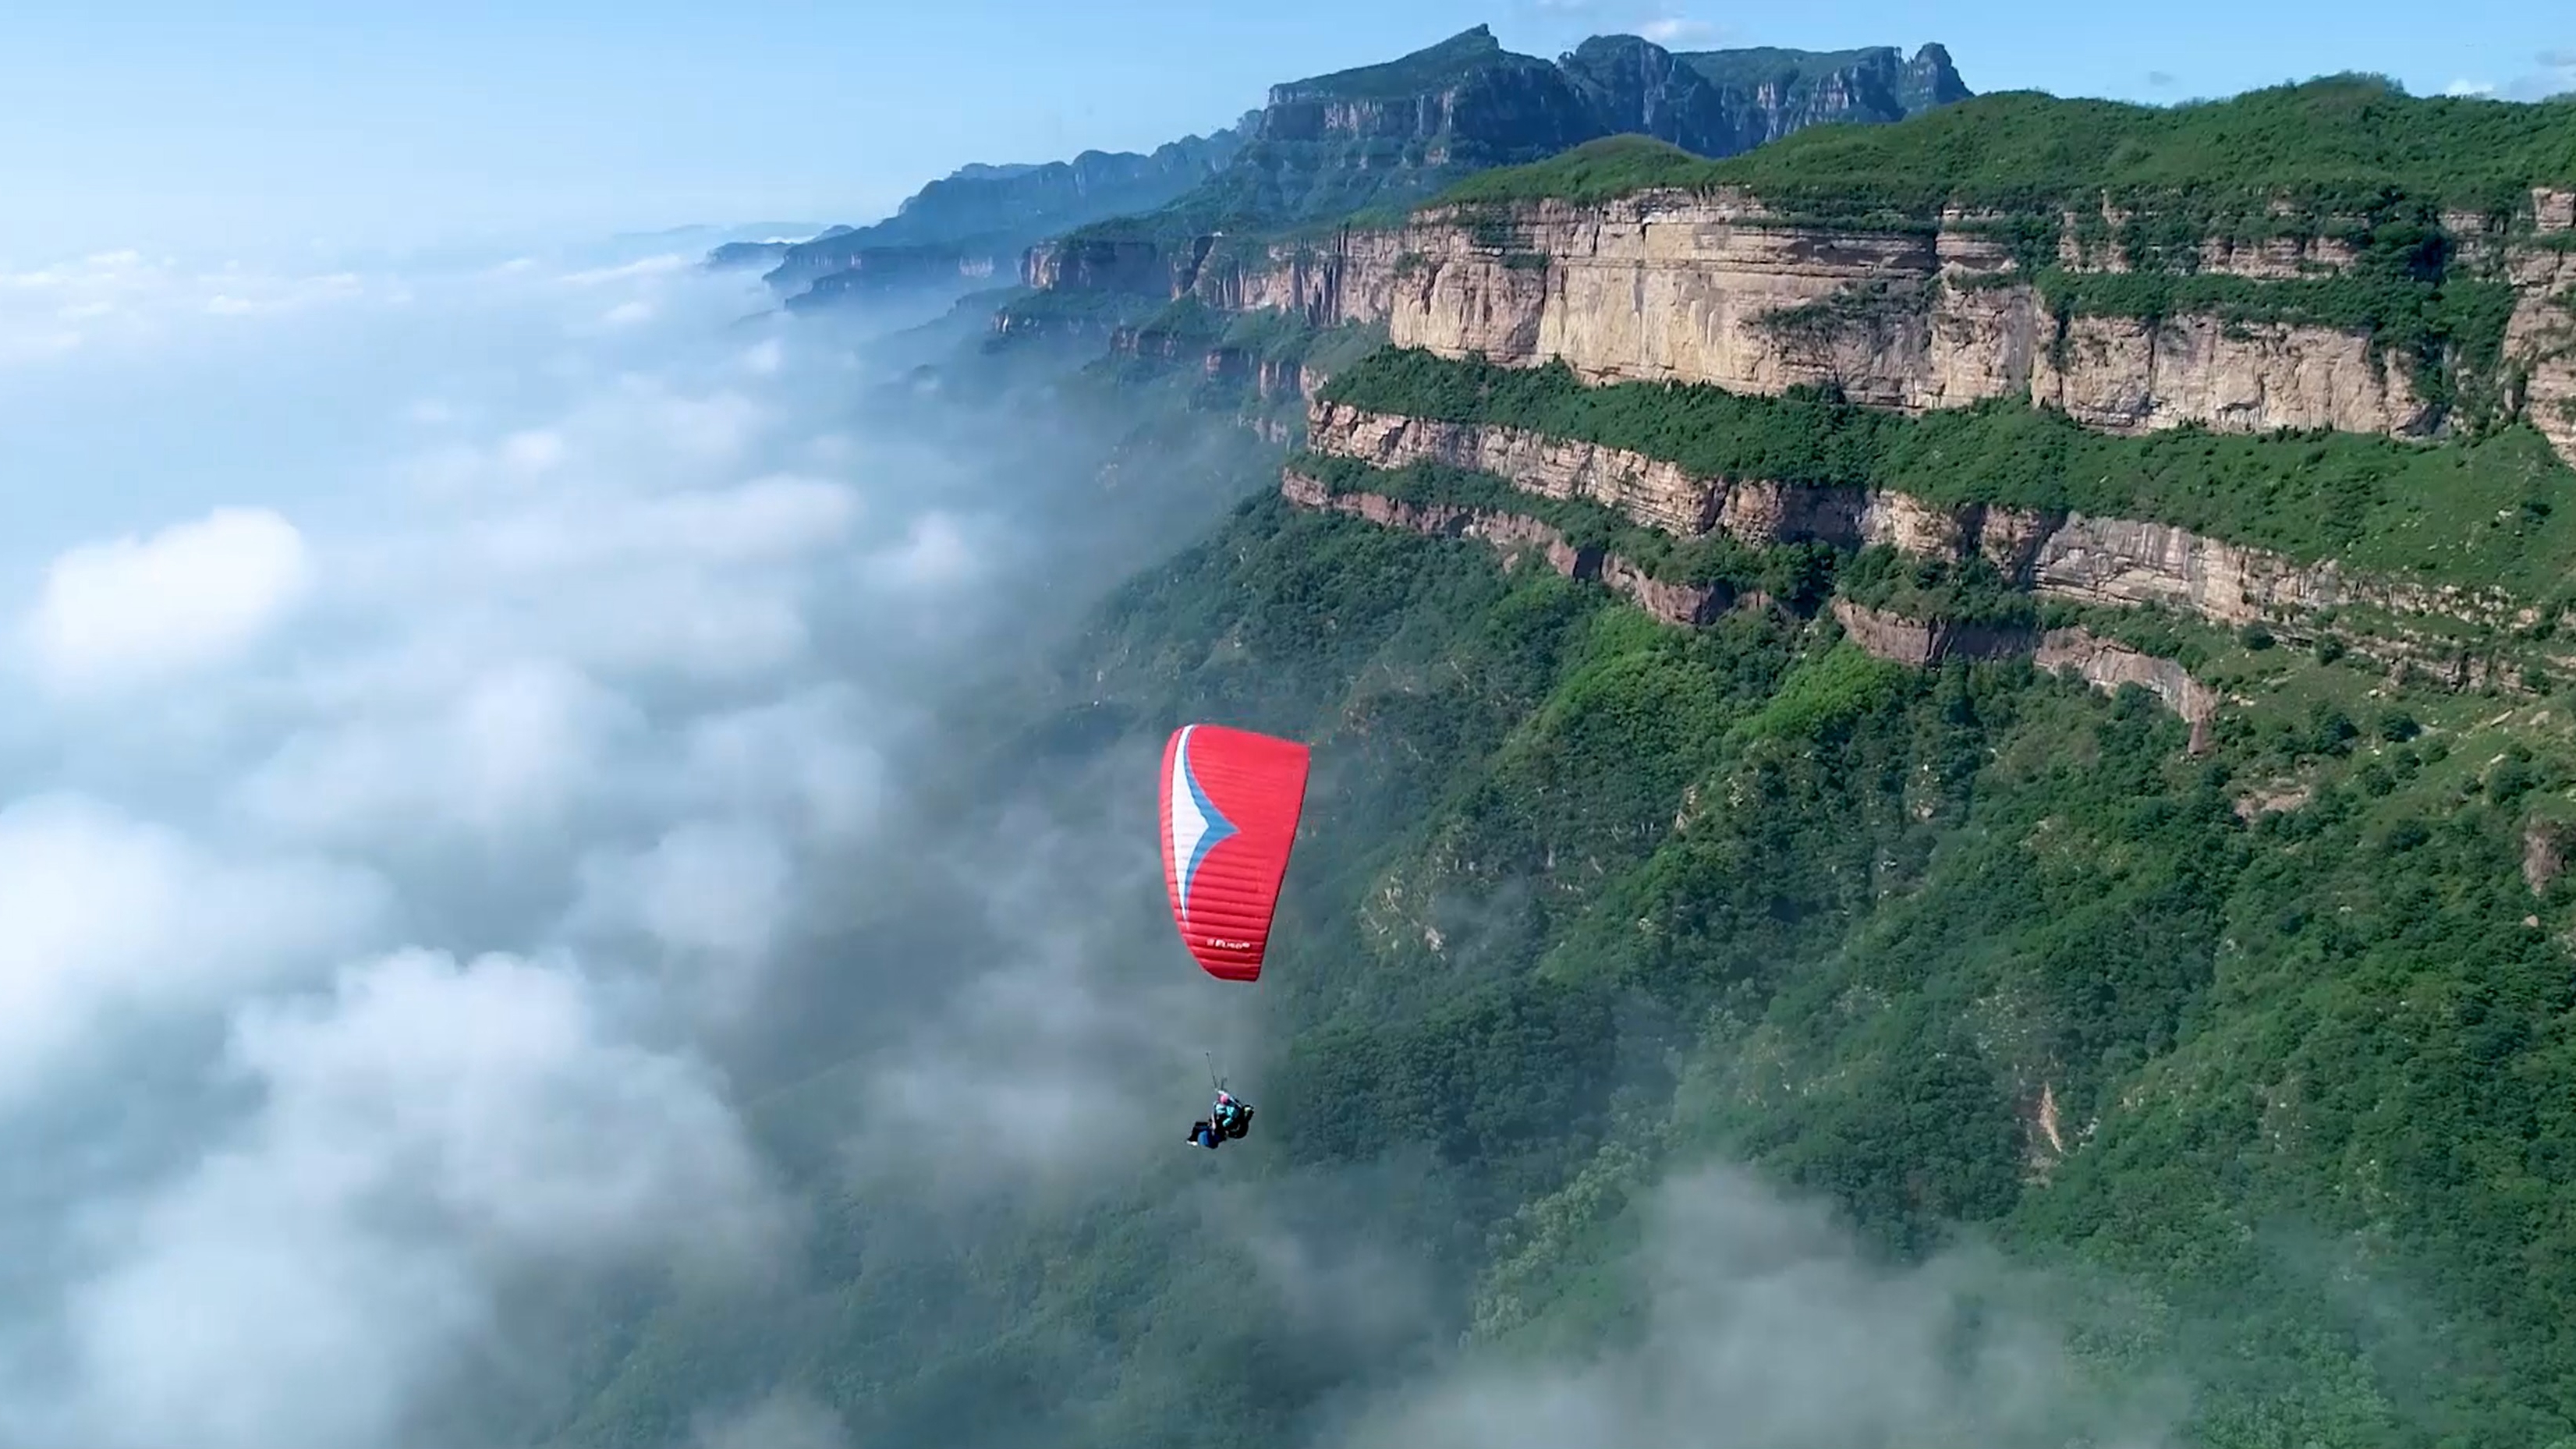 林州滑翔俱乐部遨游云海滑翔伞体验